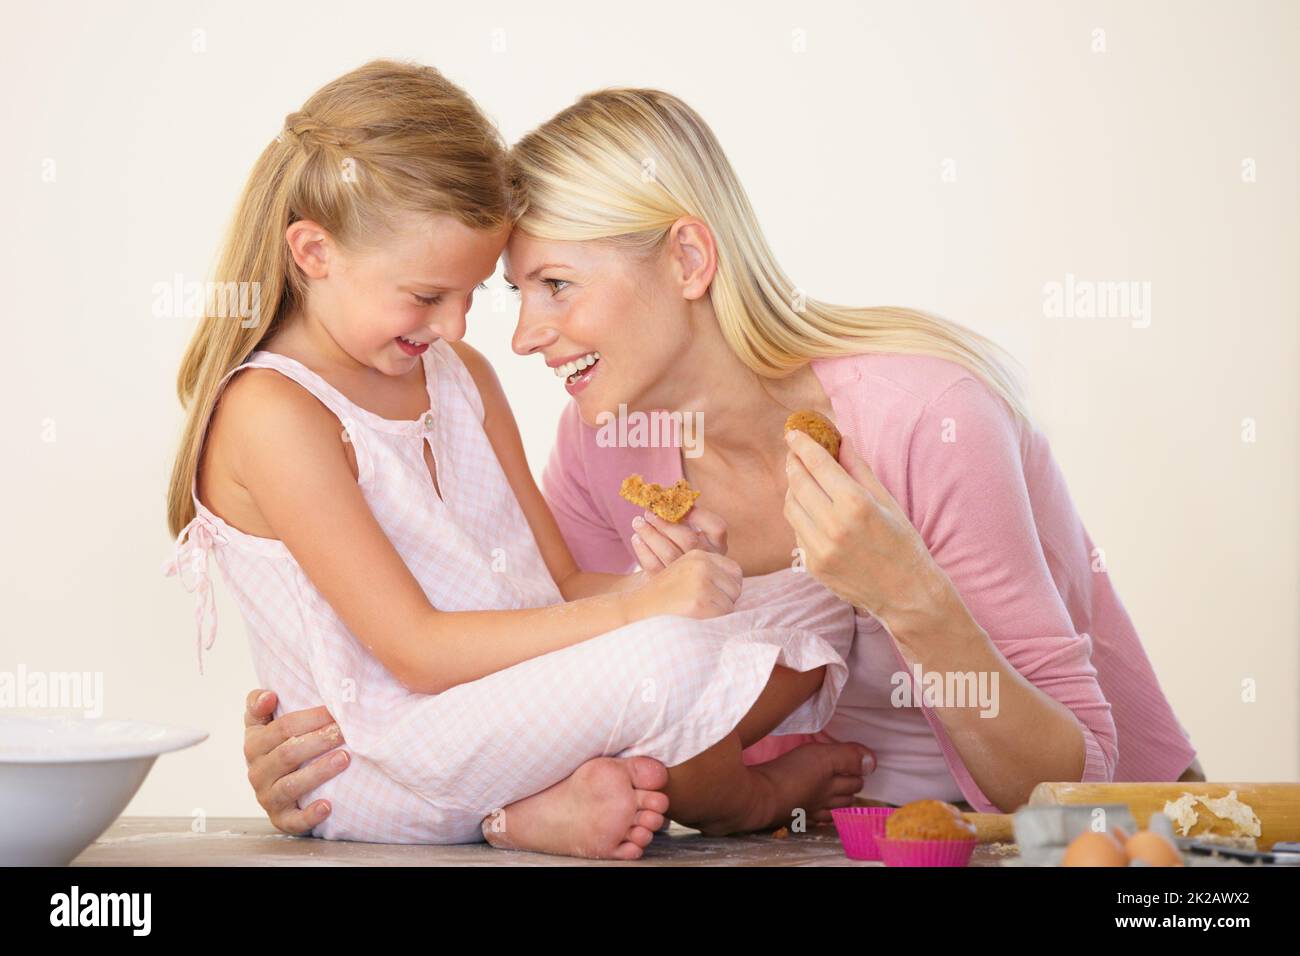 Jeden Moment mit ihr in Ehren halten. Eine Mutter und Tochter essen Muffins nach dem Backen und Kleben. Stockfoto